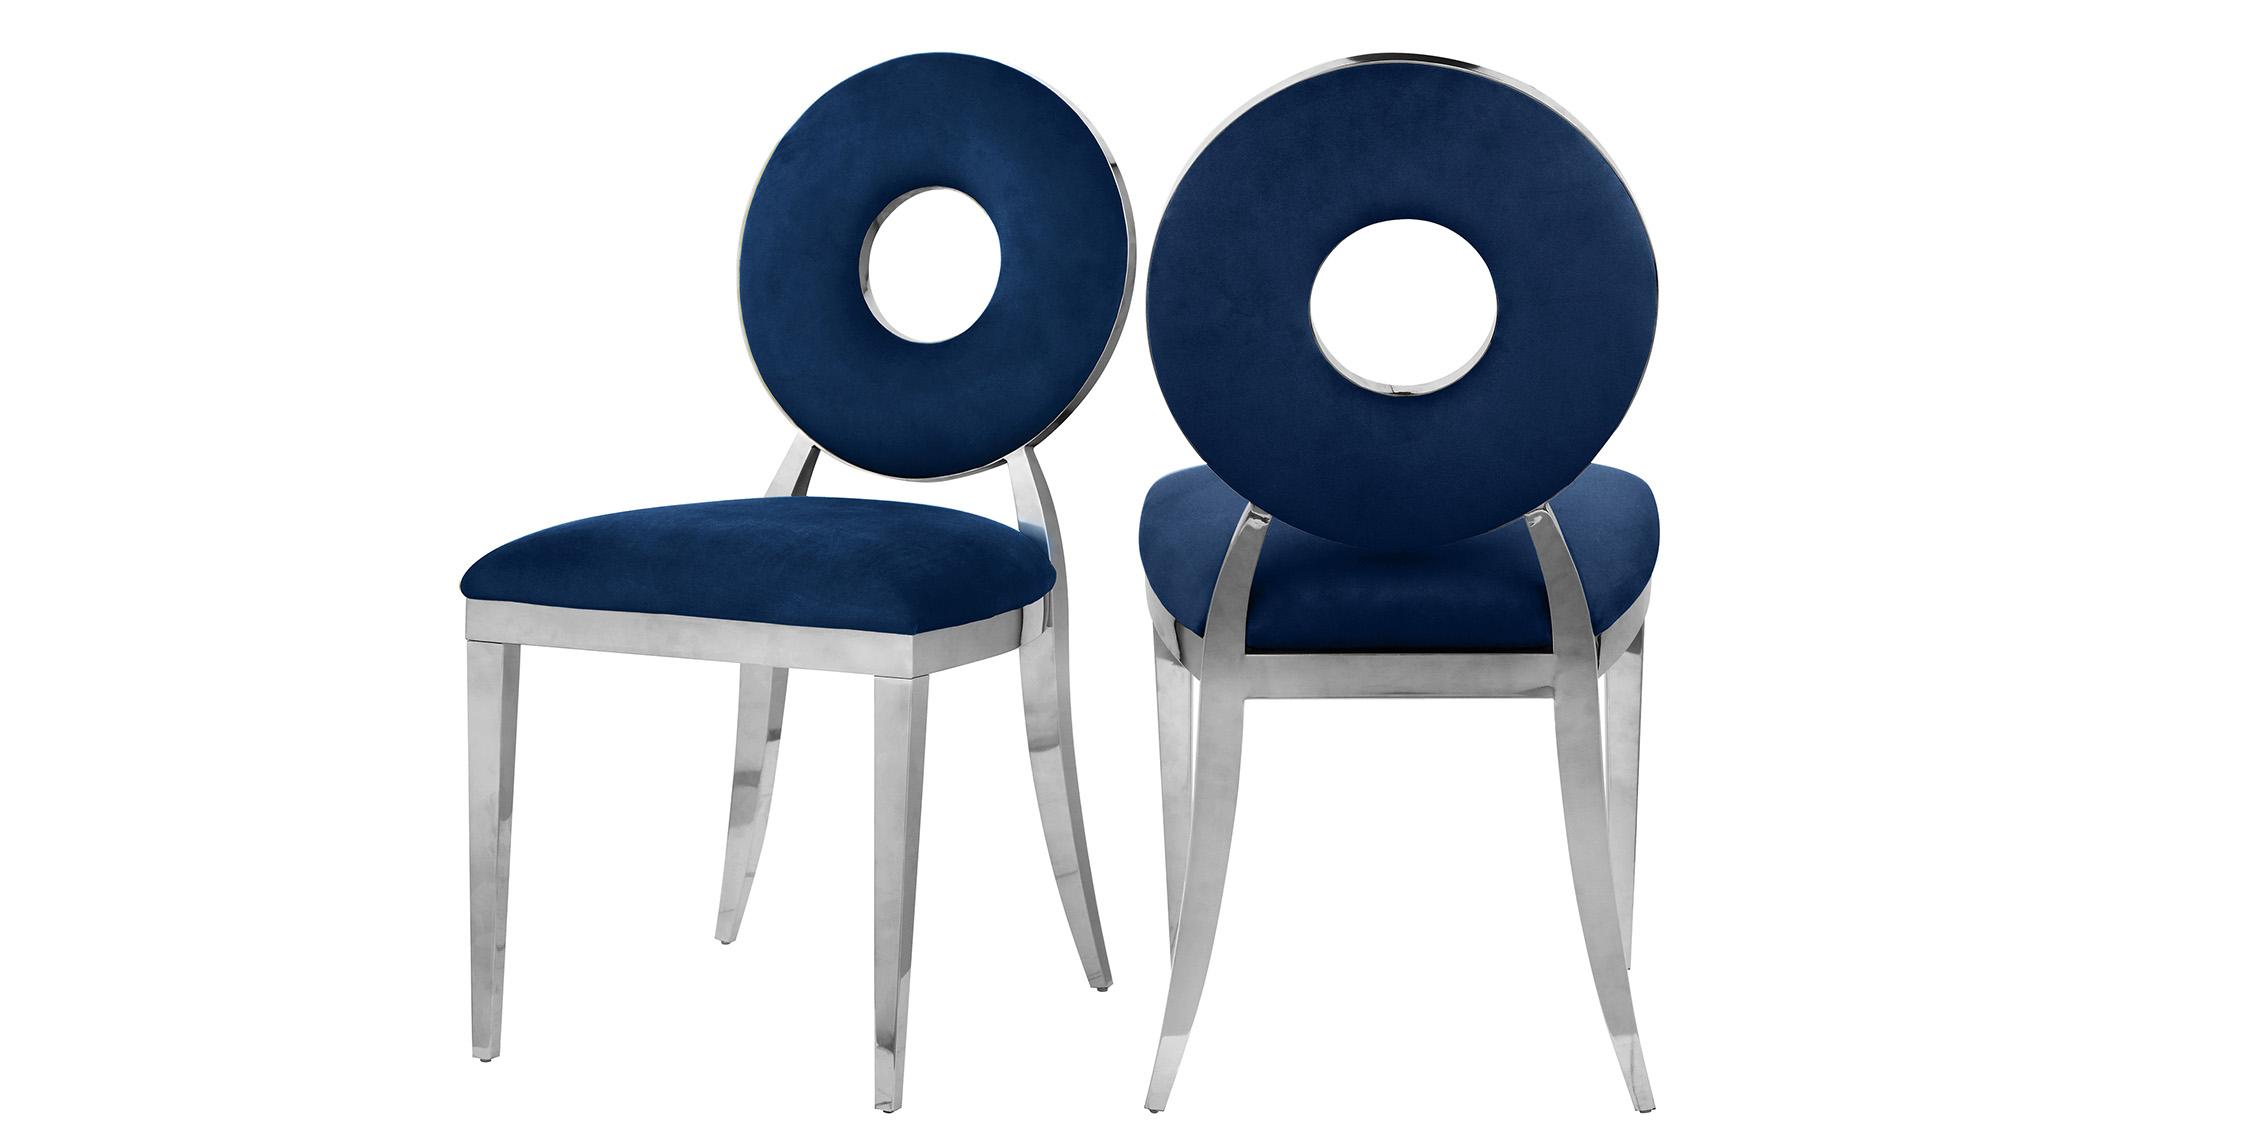 Contemporary Dining Chair Set CAROUSEL 859Navy-C 859Navy-C in Chrome, Navy Velvet